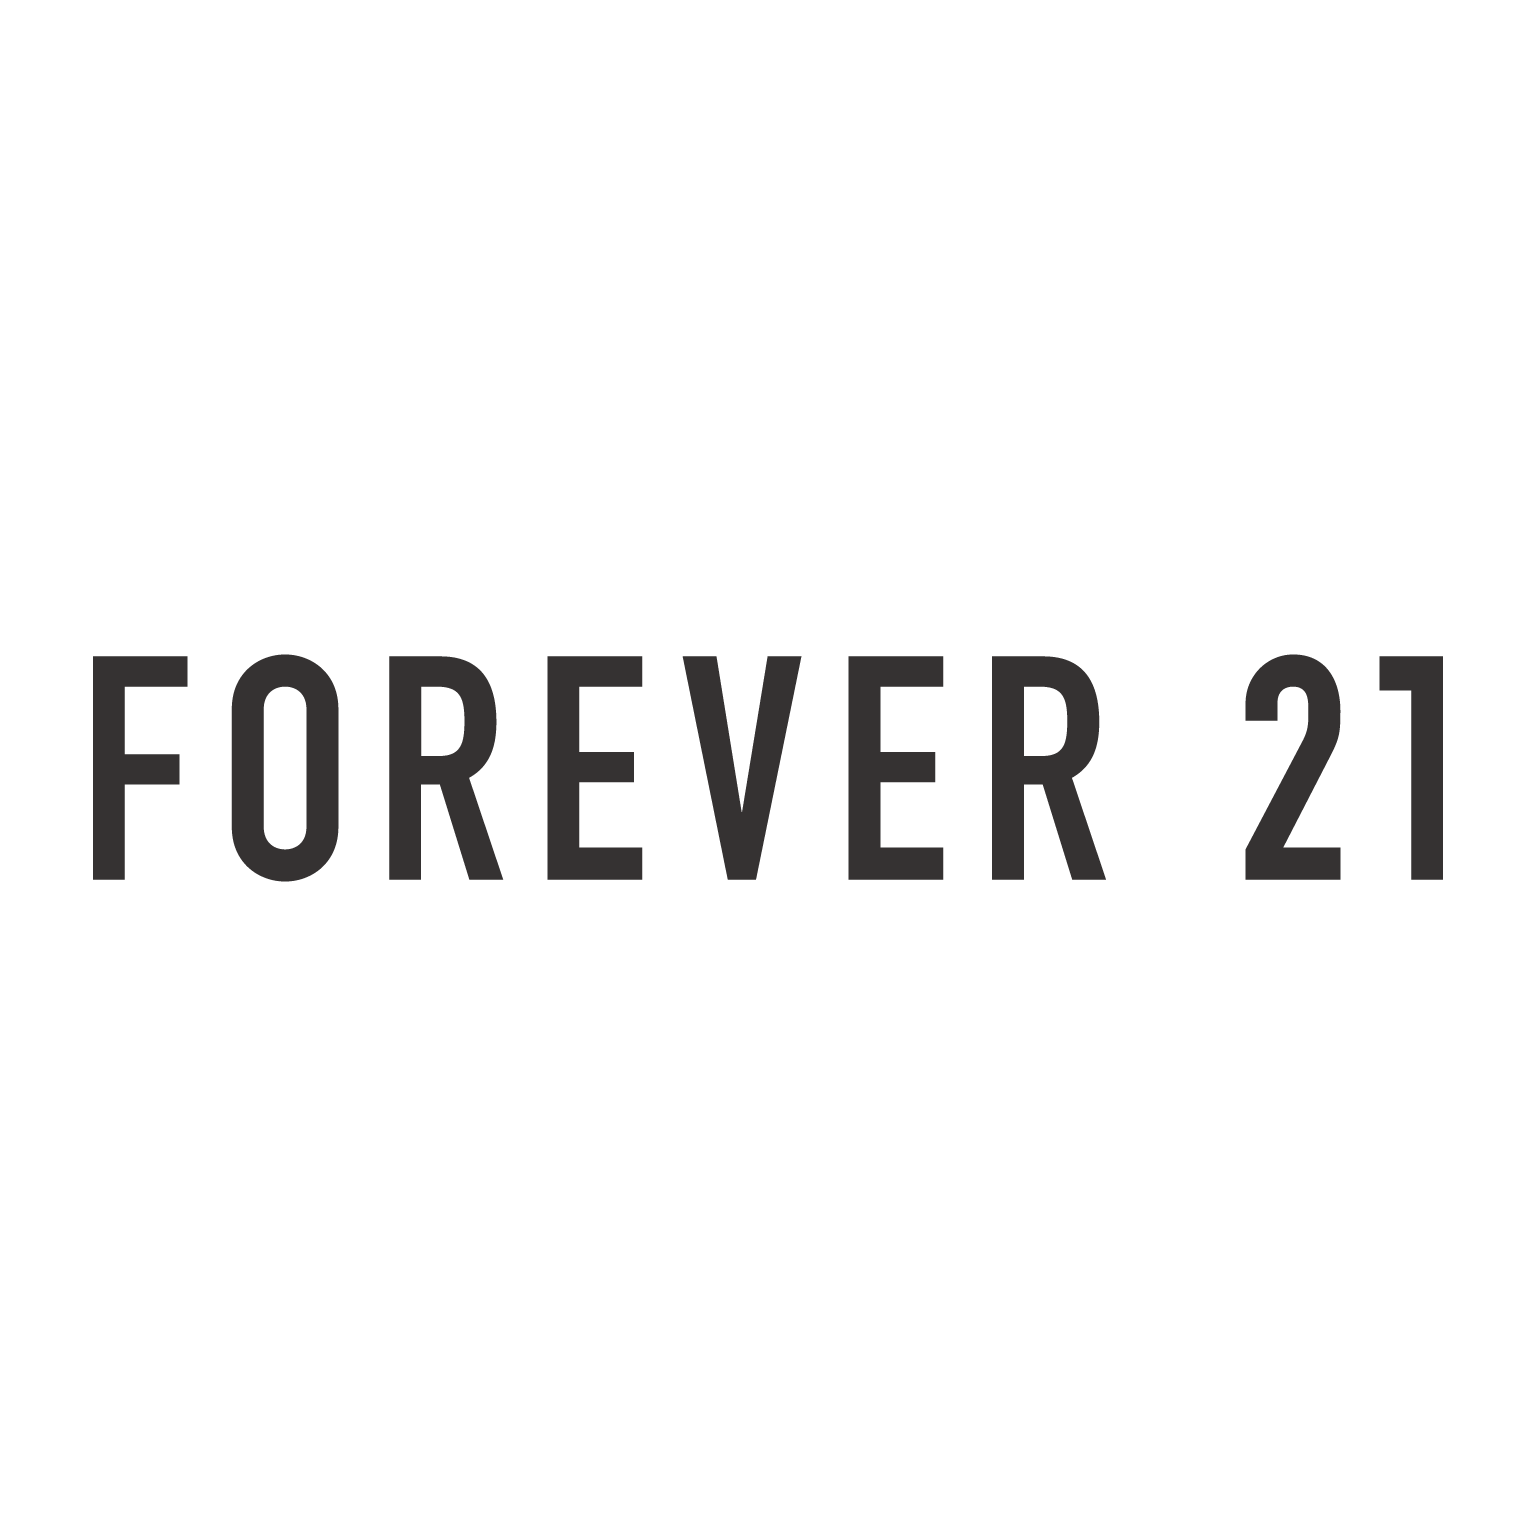 vetor forever 21